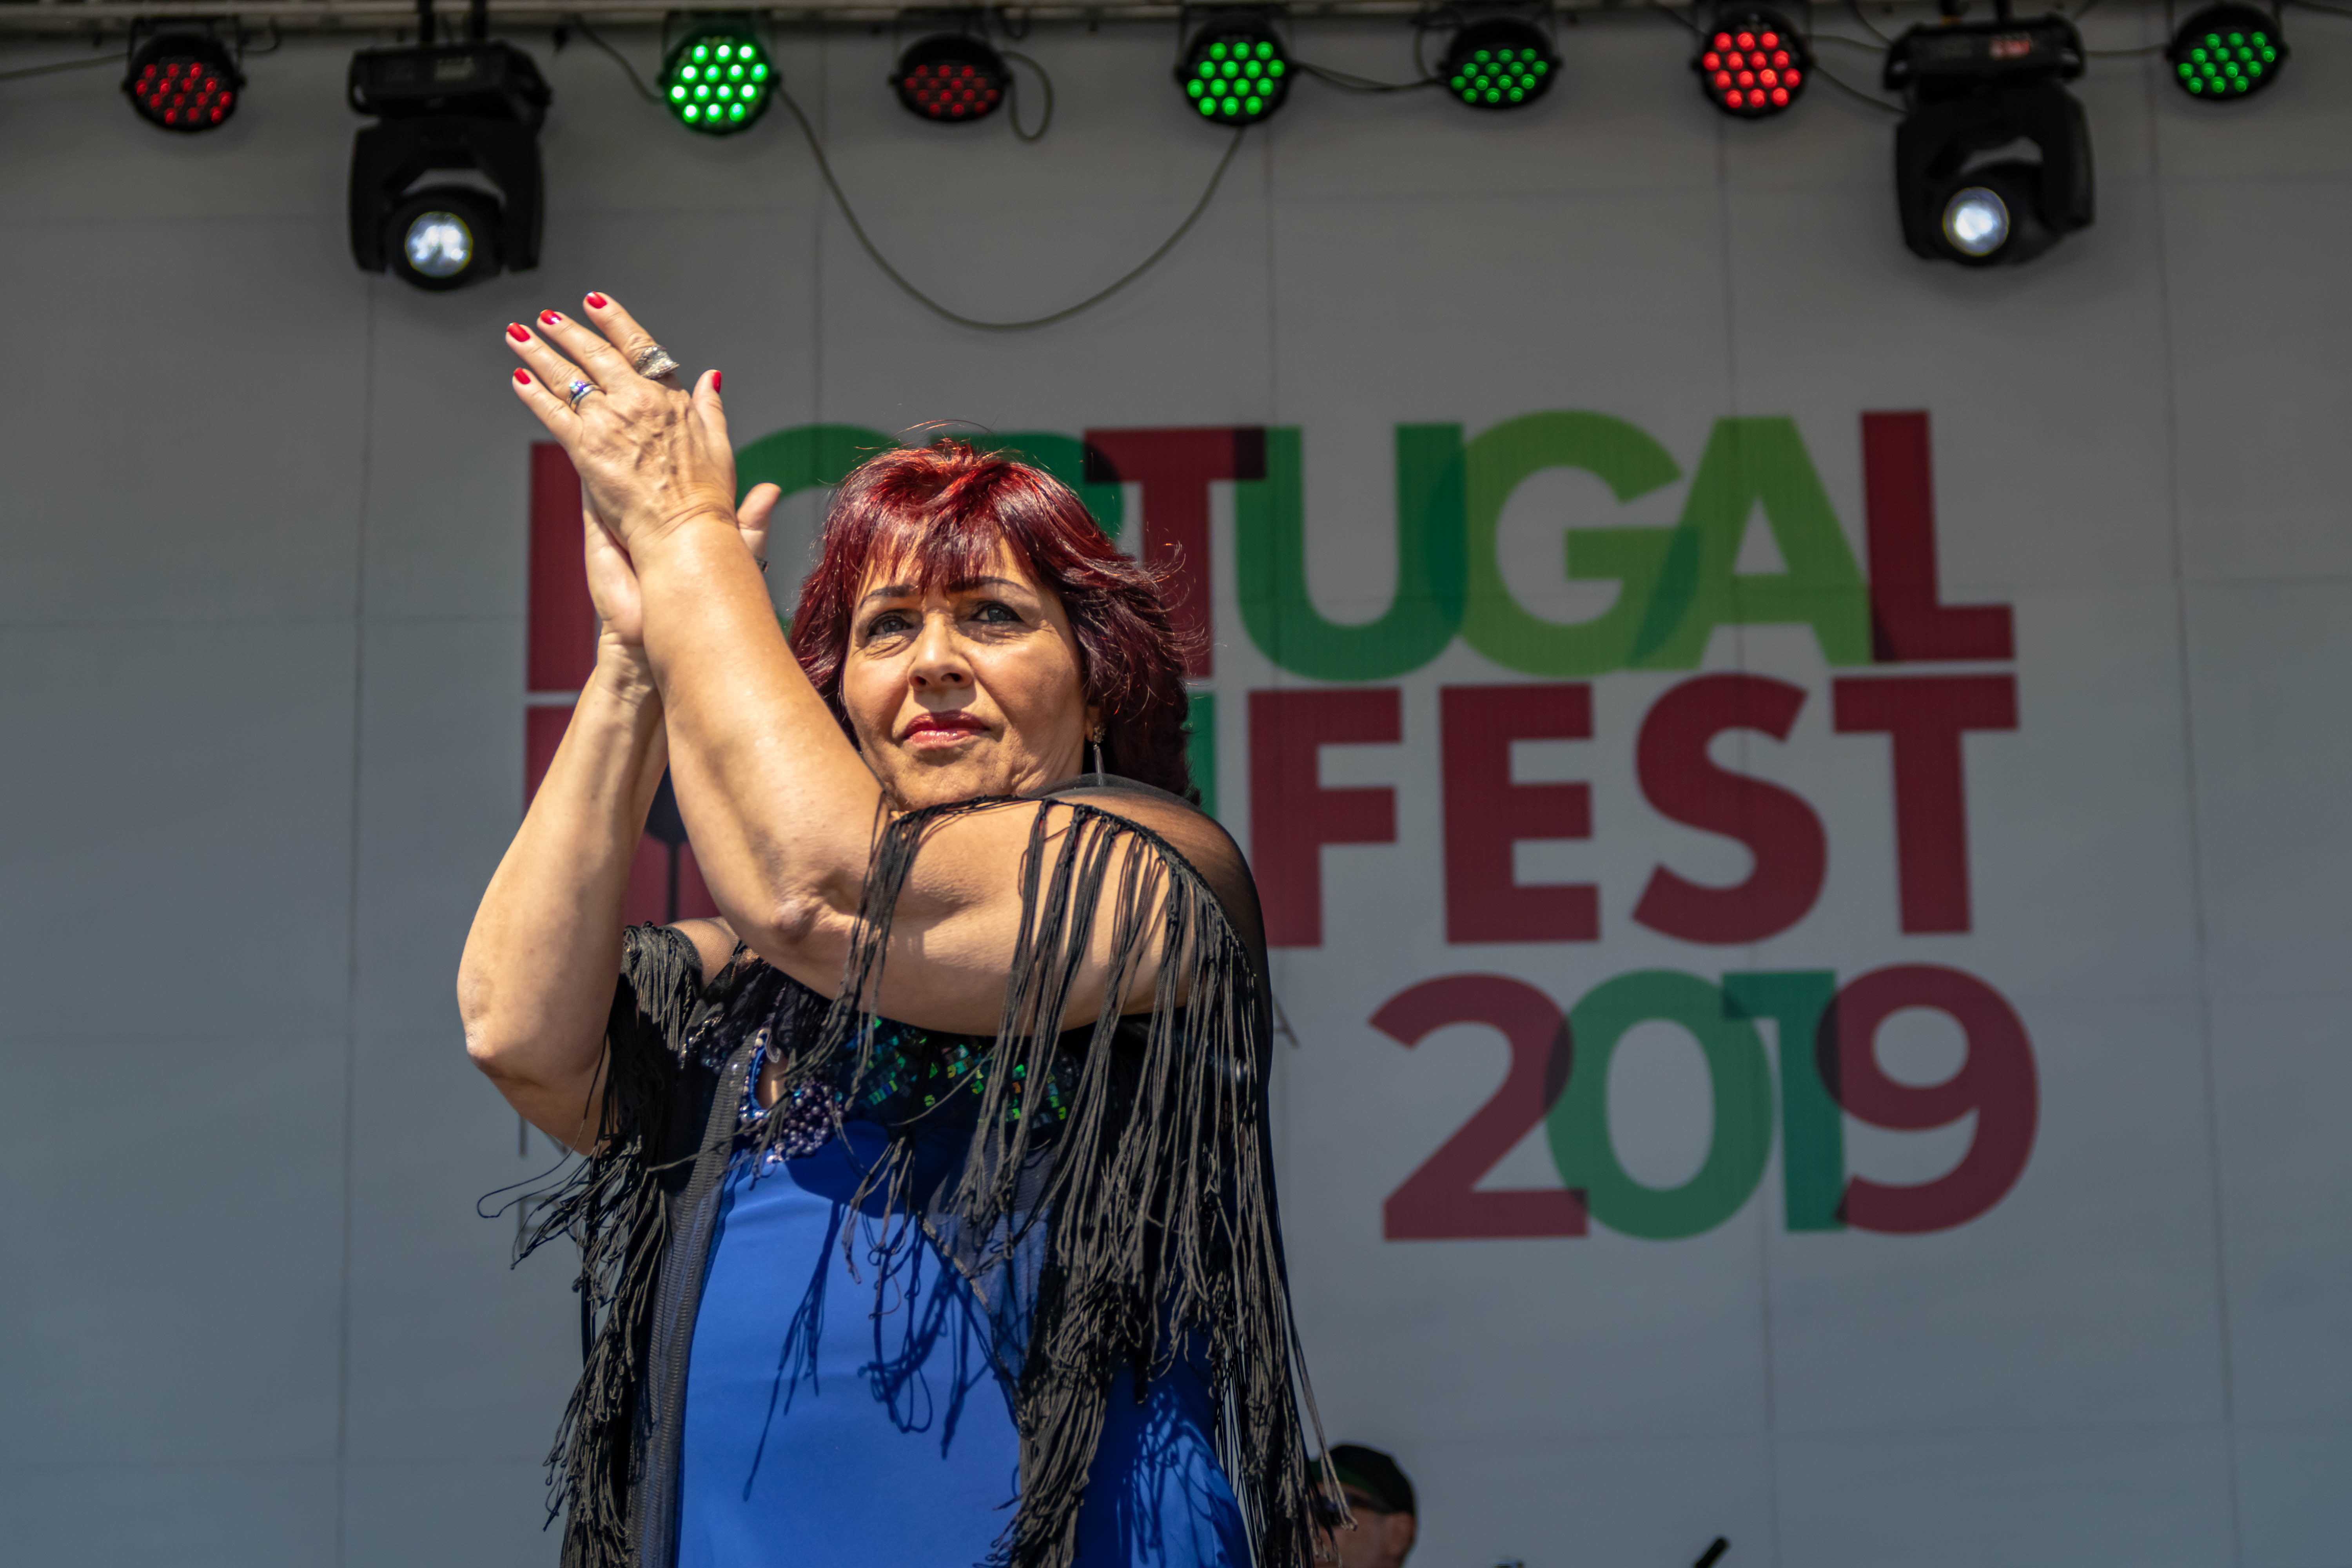 Ciça Marinho se apresenta no palco do Portugal Fest 2019. Ela é uma mulher branca, de cabelos vermelhos e veste uma roupa azul com franjas pretas.